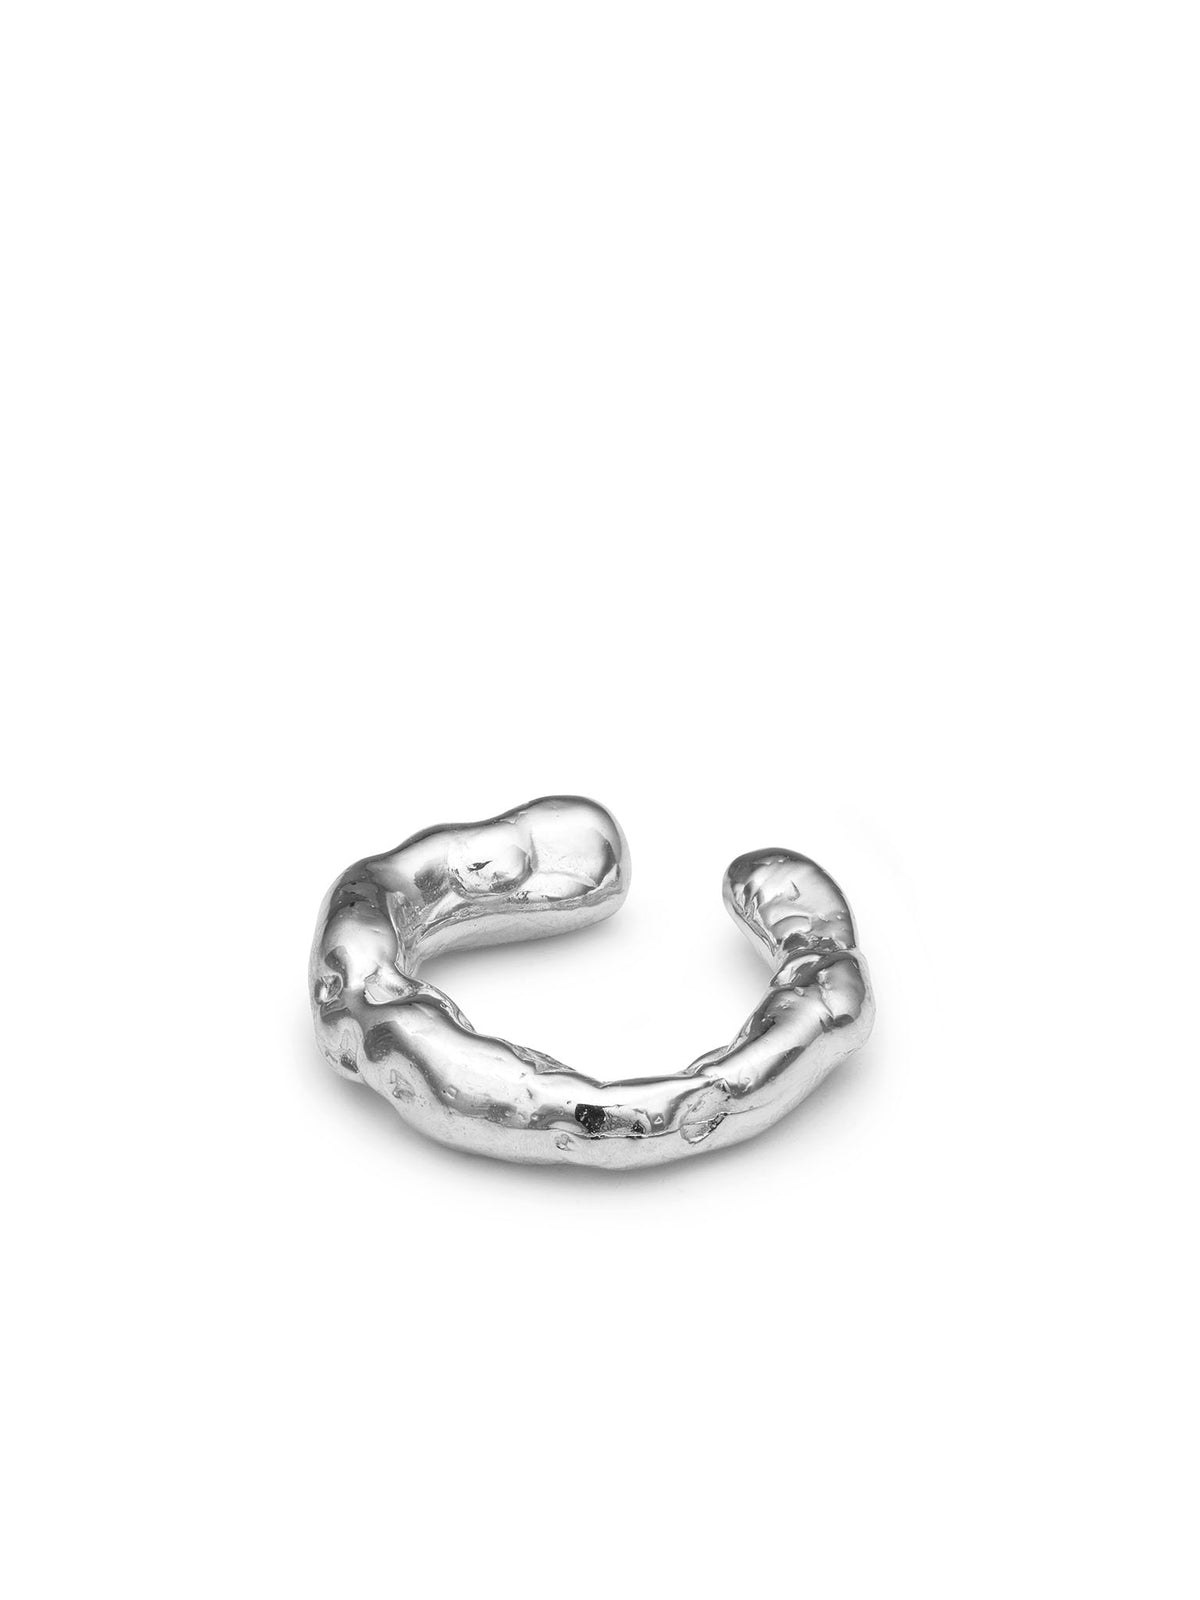 Talisman Fülgyűrű - Ezüst 